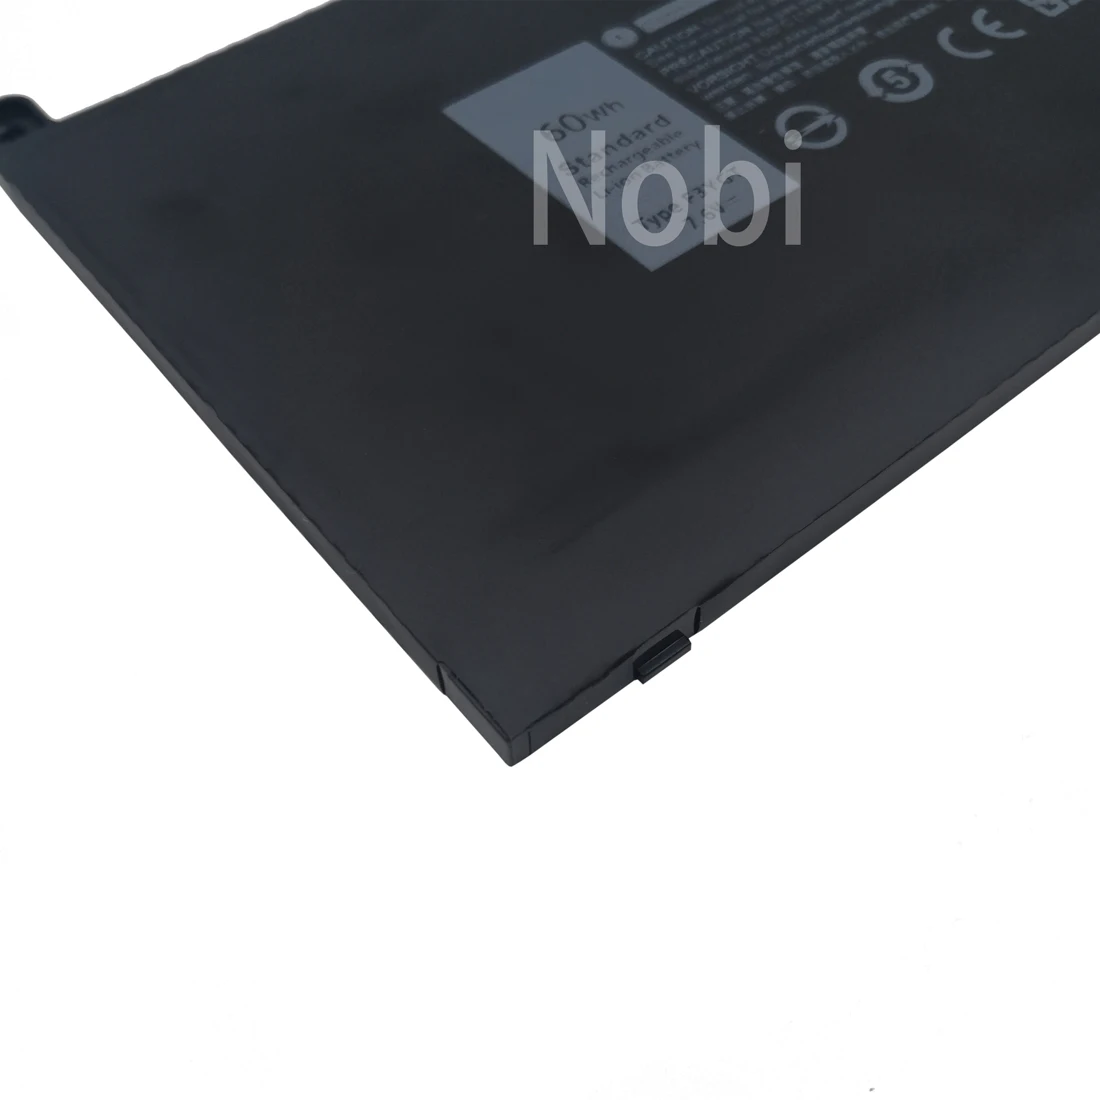 Nobi 7.6 V F3YGT Laptop Bateria para Dell Latitude 12 7000 7280 7290/13 7000 P29S002/14 P73G002 E7390 E7480 Série DM3WC DM6WC Imagem 2